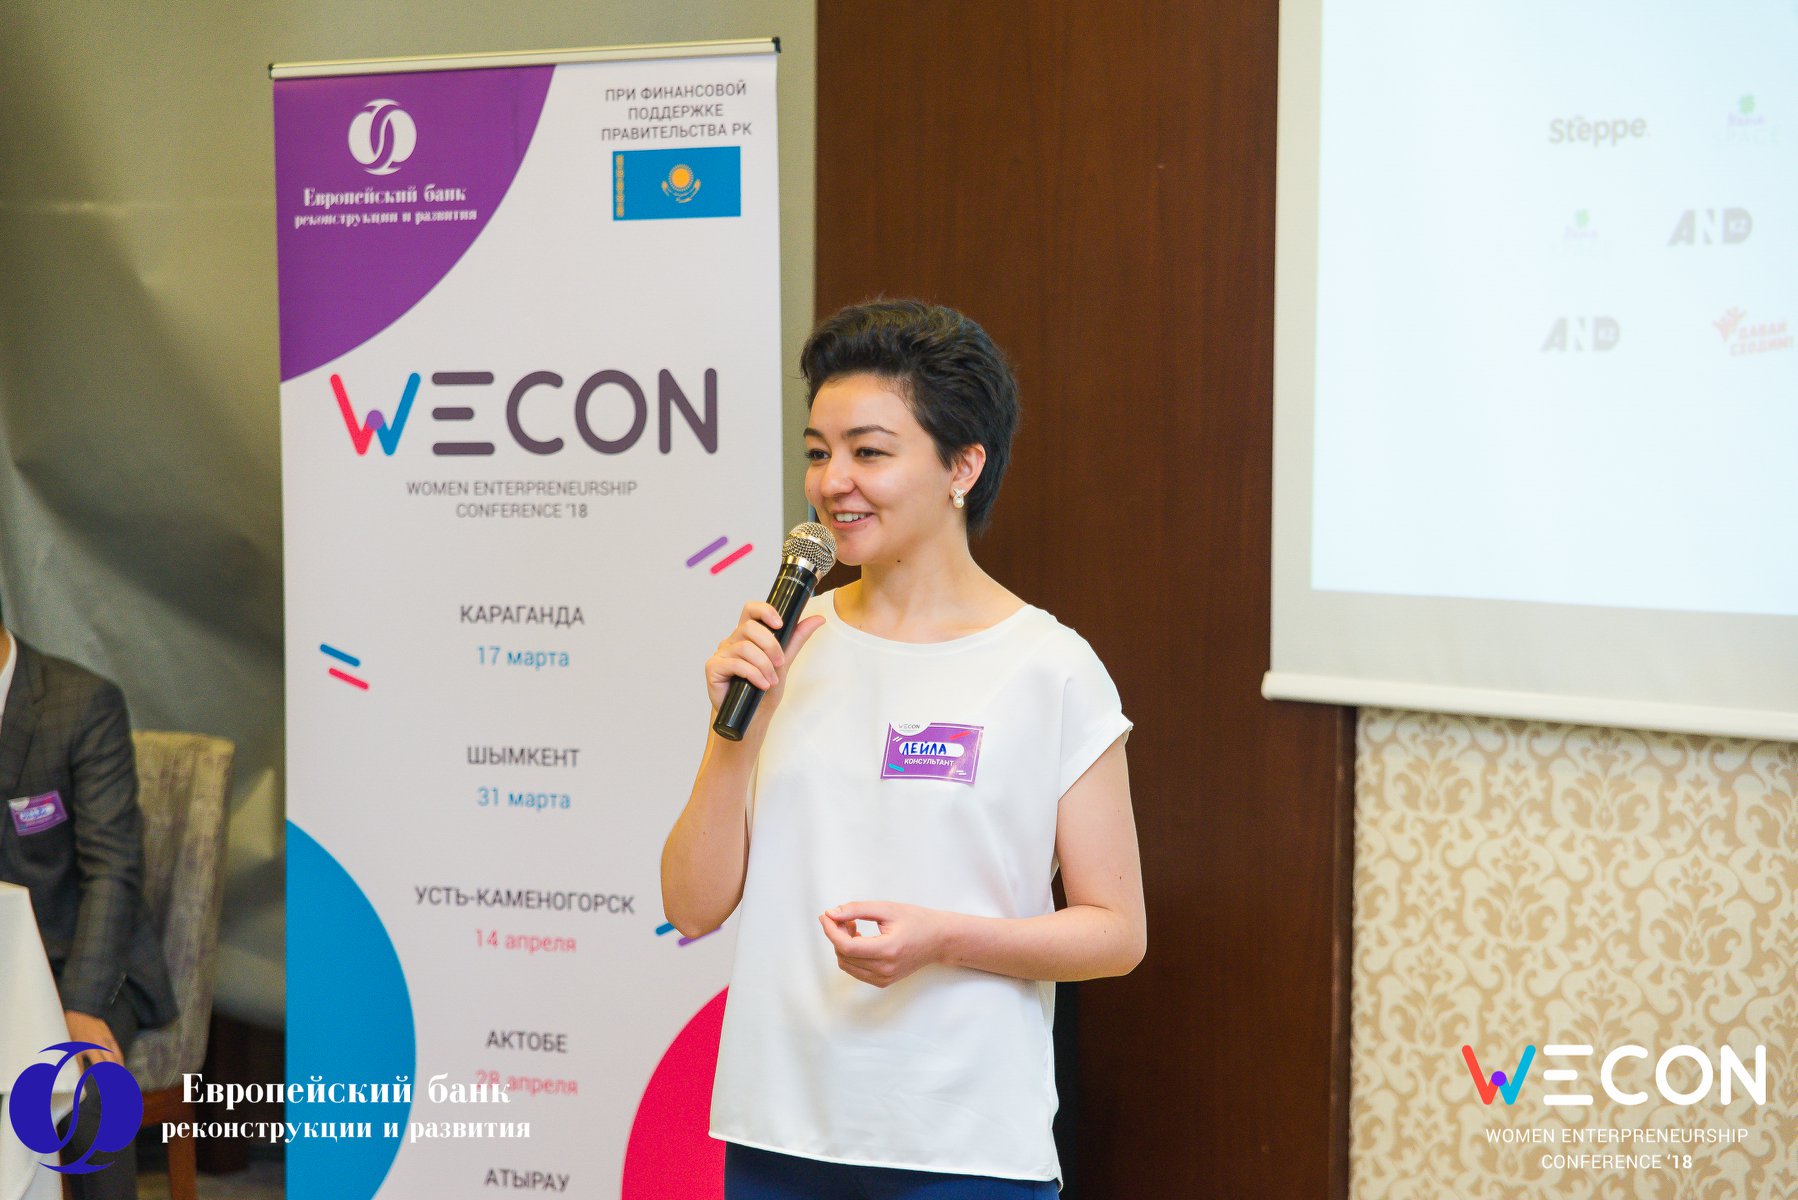 В Казахстане стартует новый сезон конференций WECON – Women Entrepreneurship Conference '19